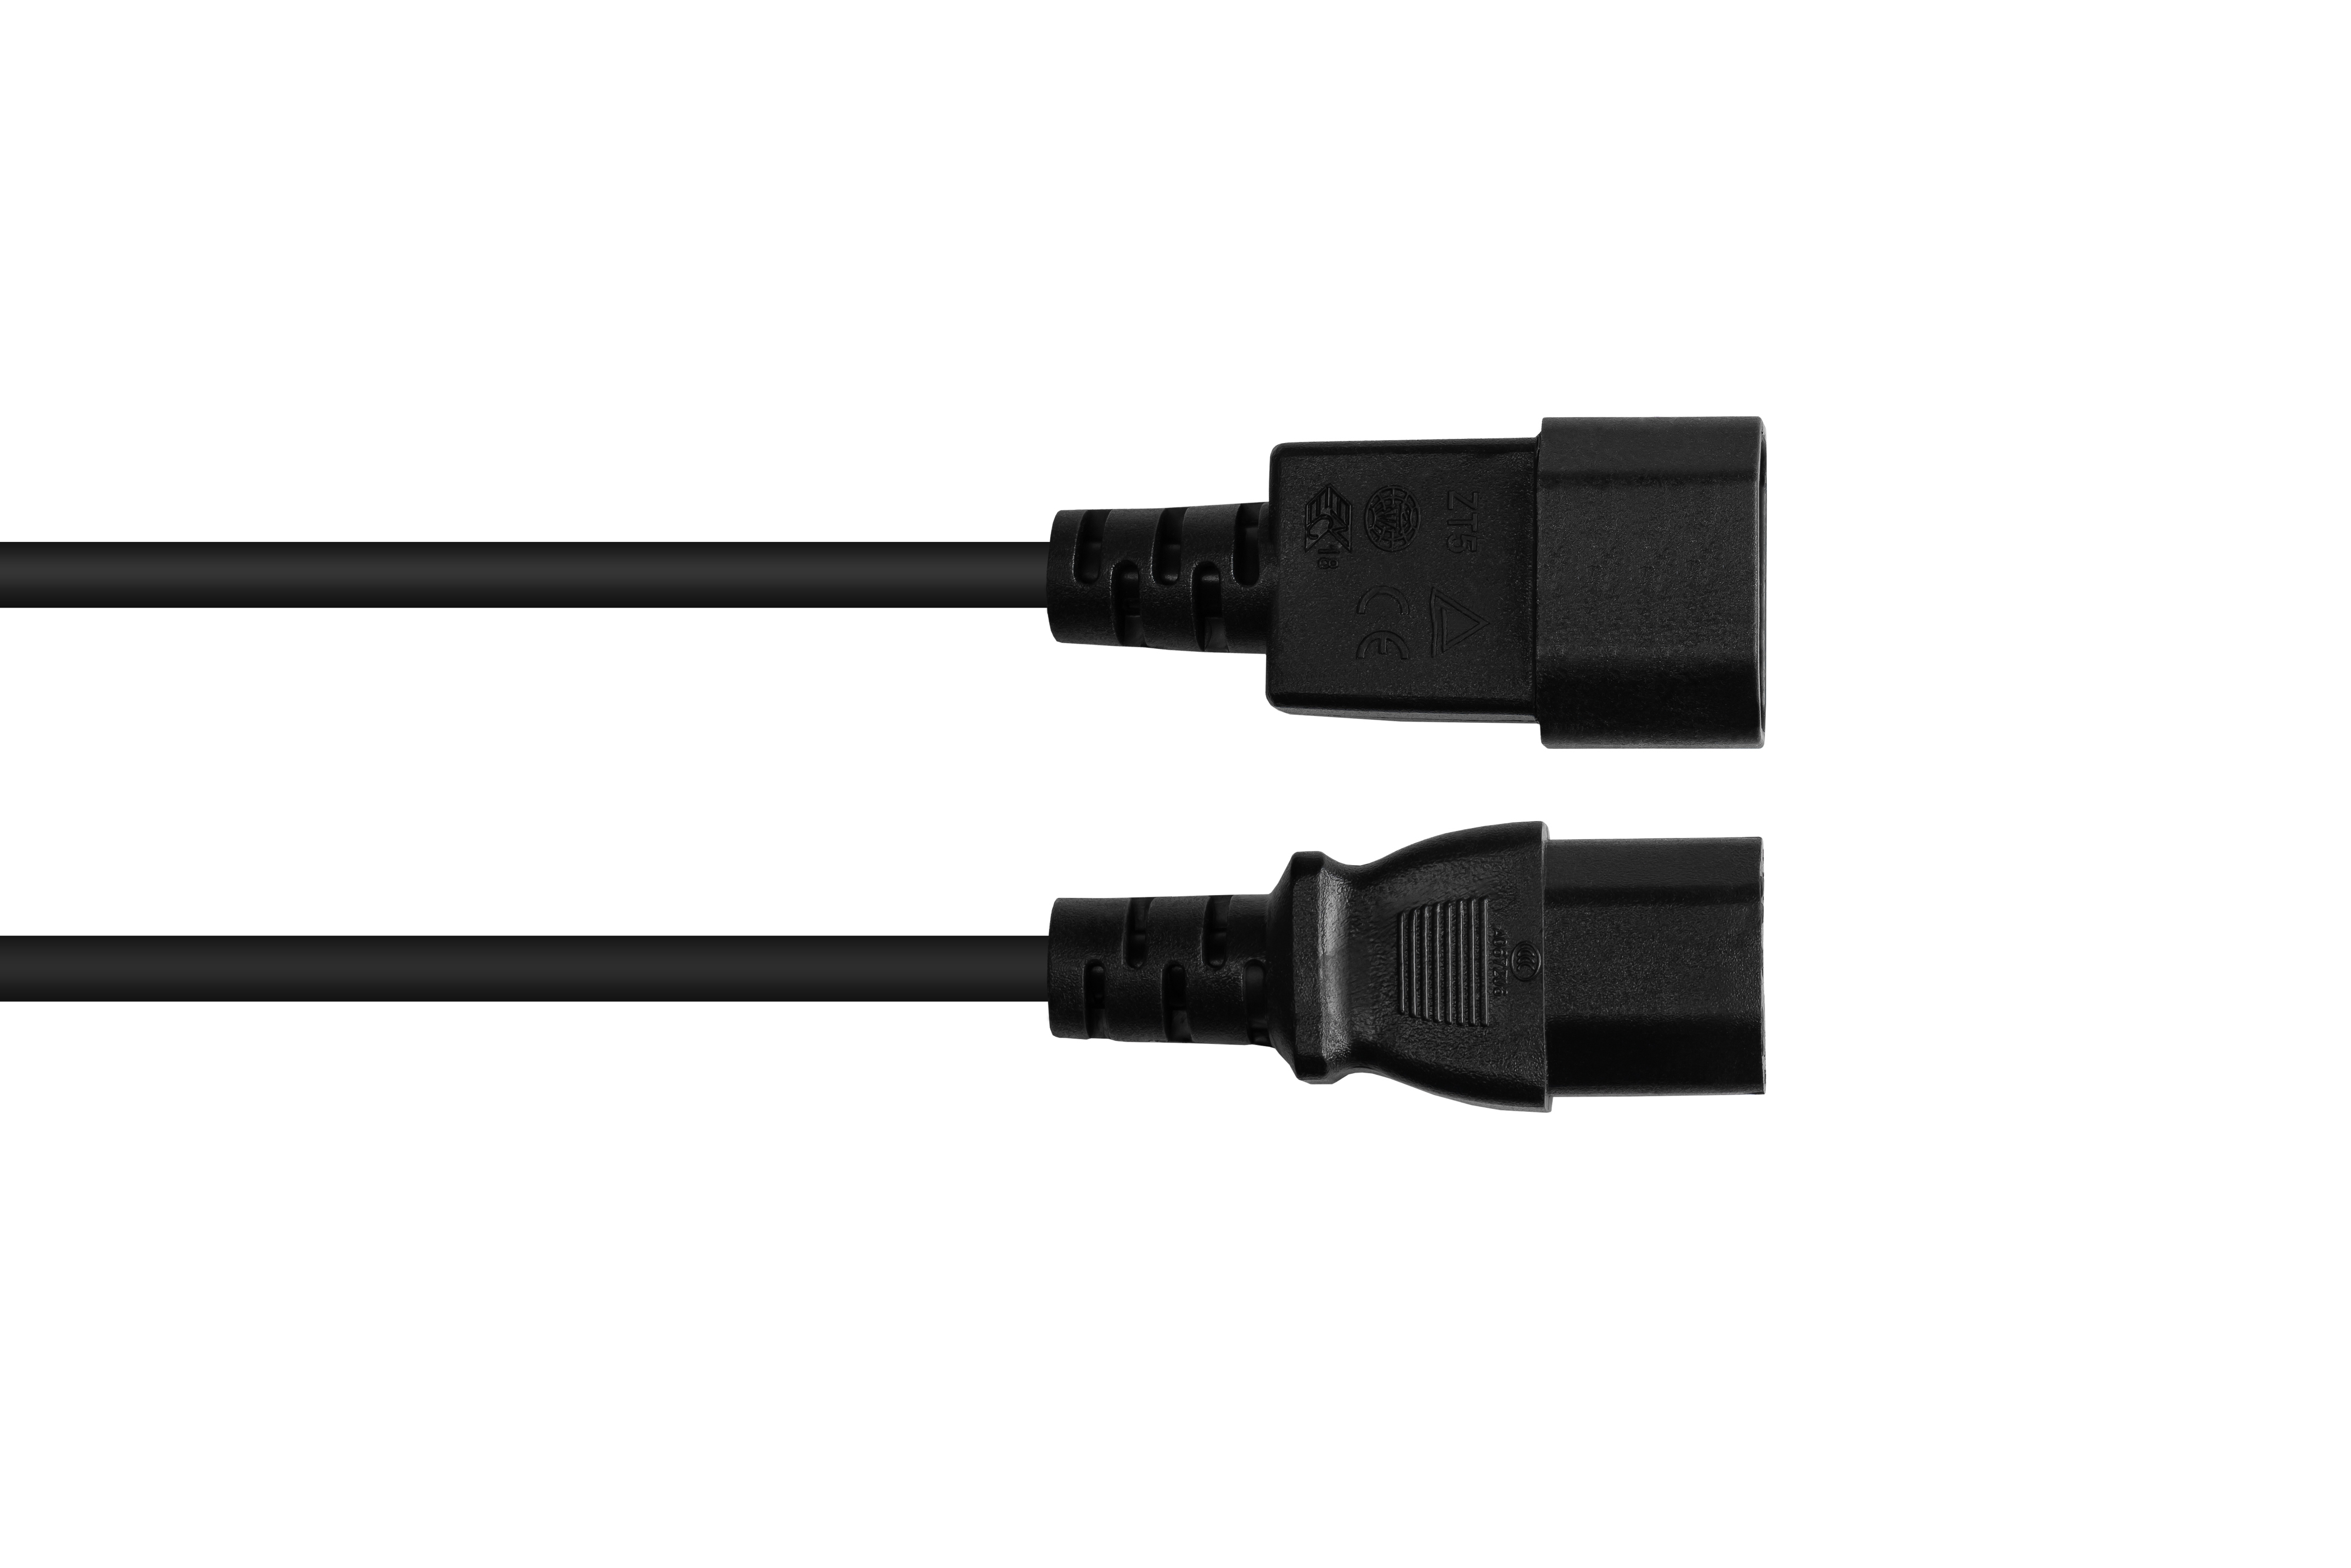 GOOD CONNECTIONS Kaltgeräte-Warmgeräte-Verbindungskabel C14 (gerade) schwarz, 0,75 mm² schwarz (gerade), C15 an Stromkabel